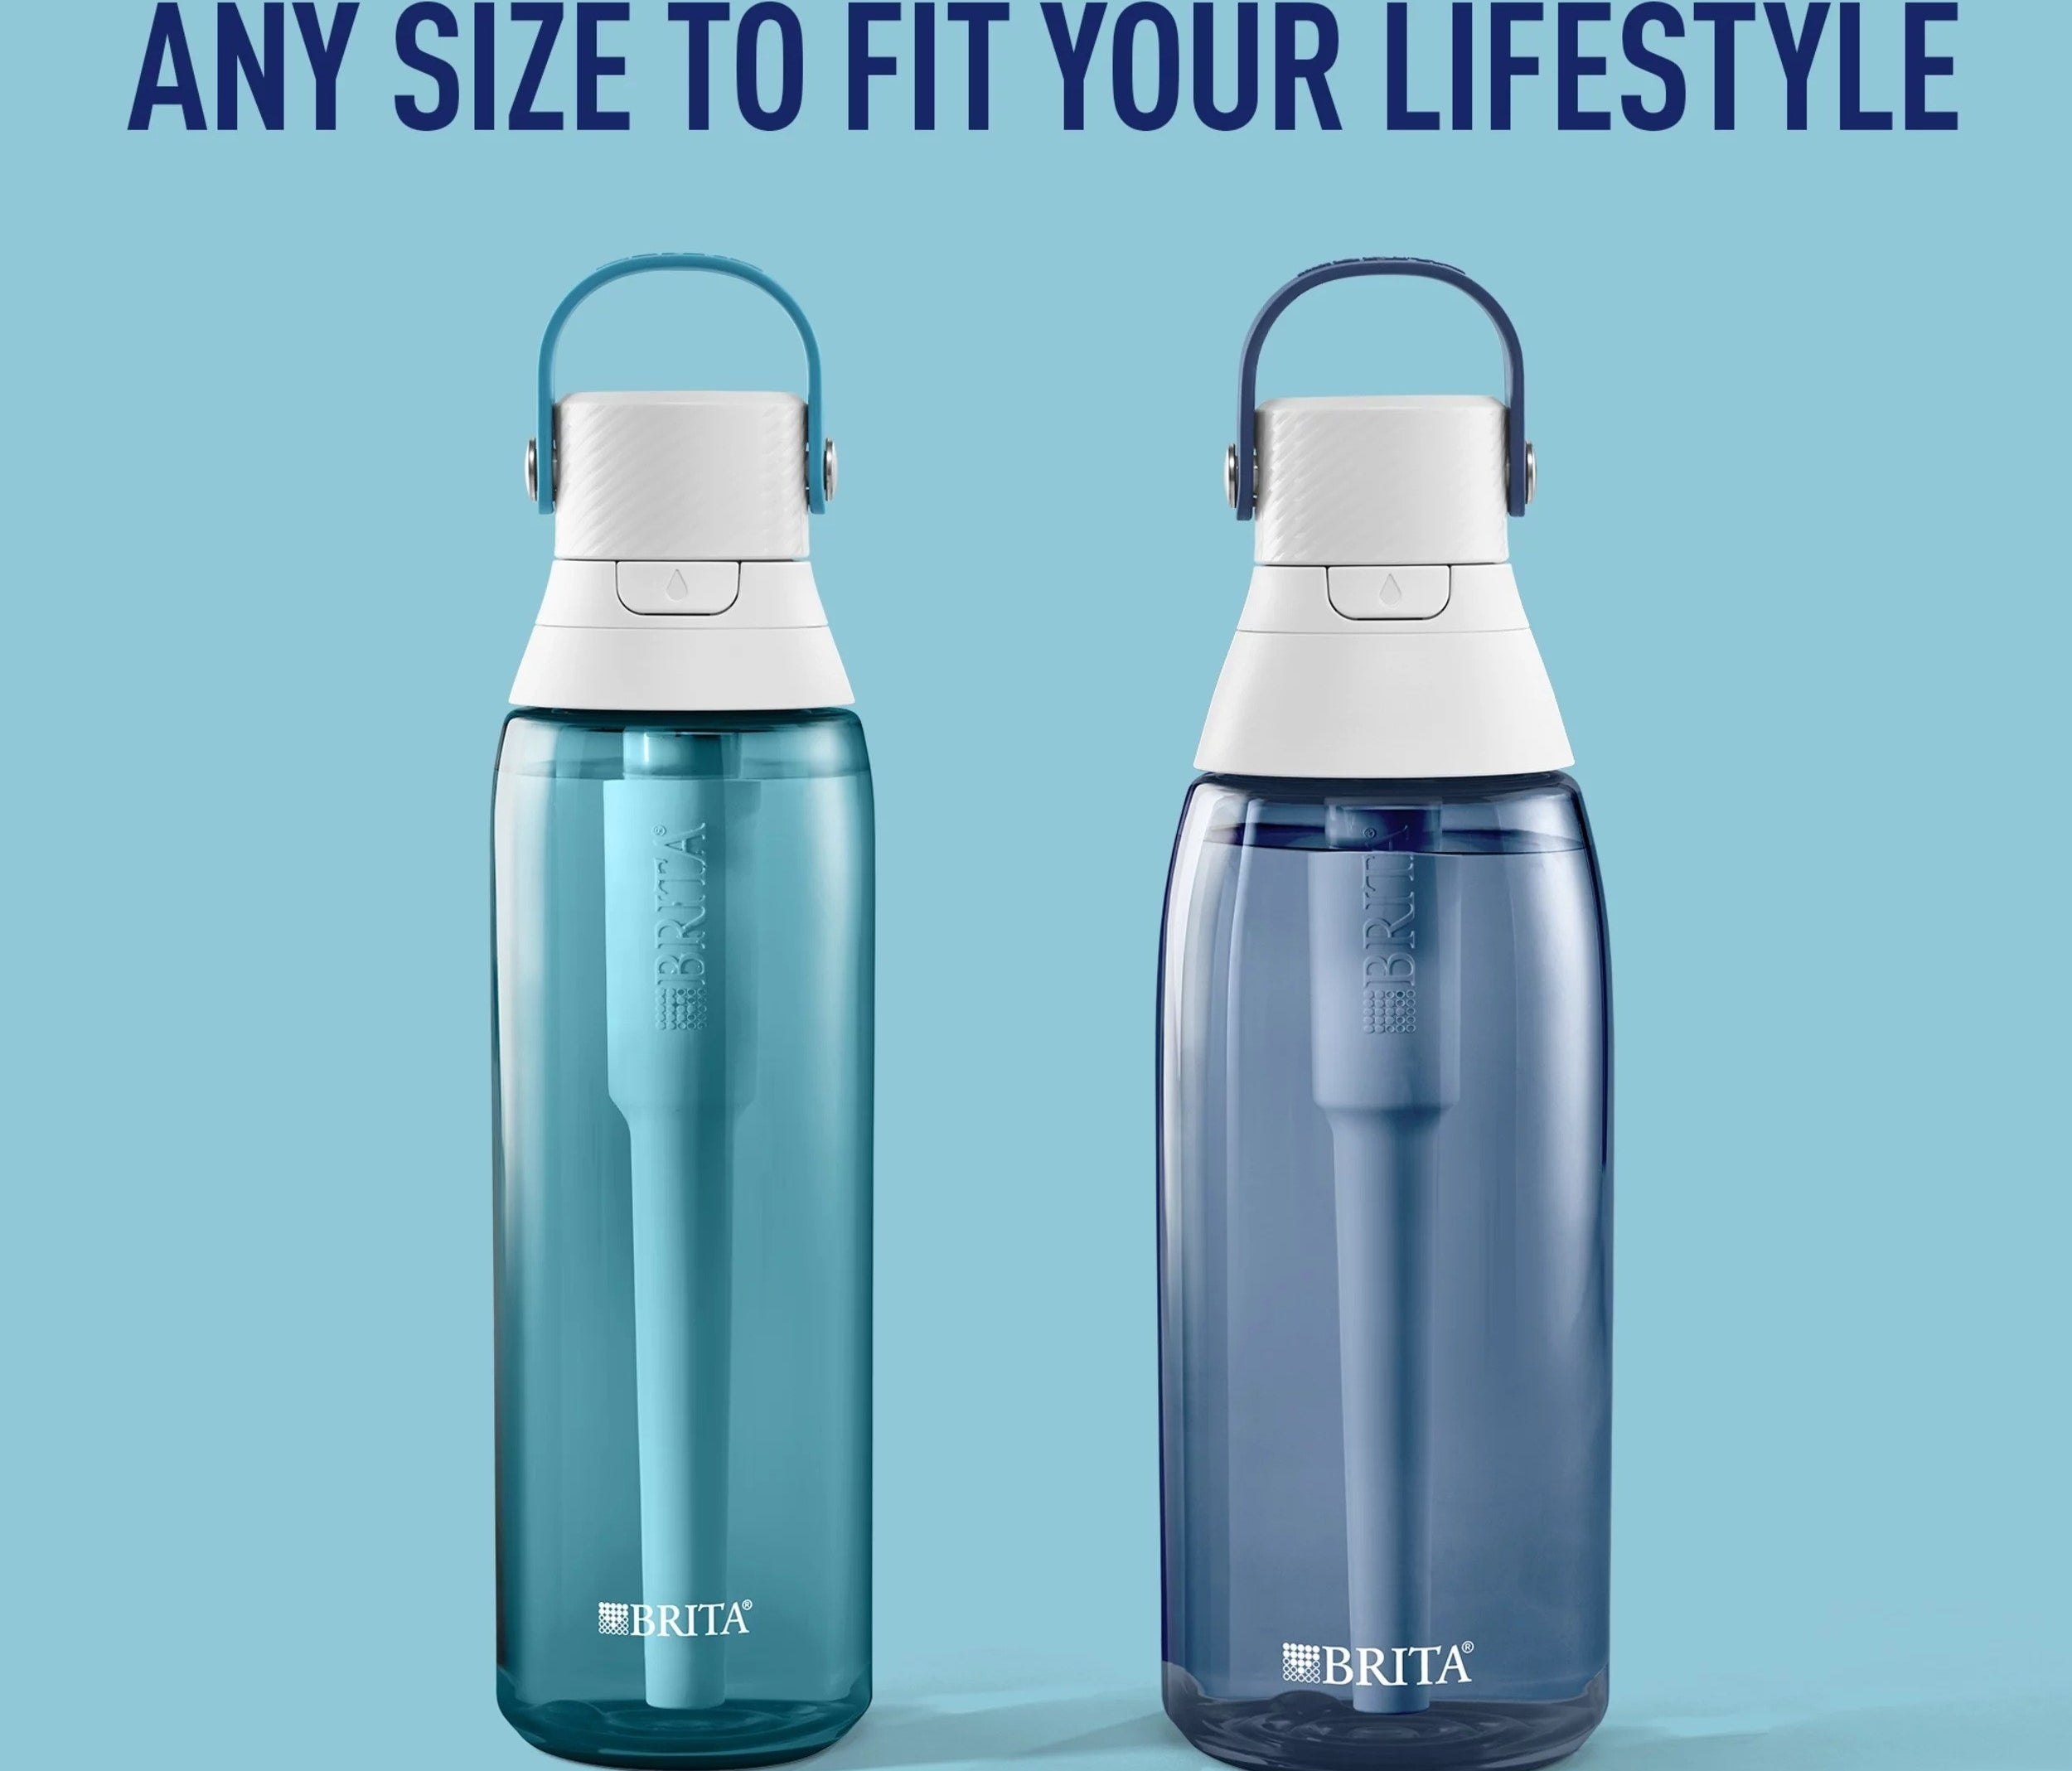 Brita water bottles